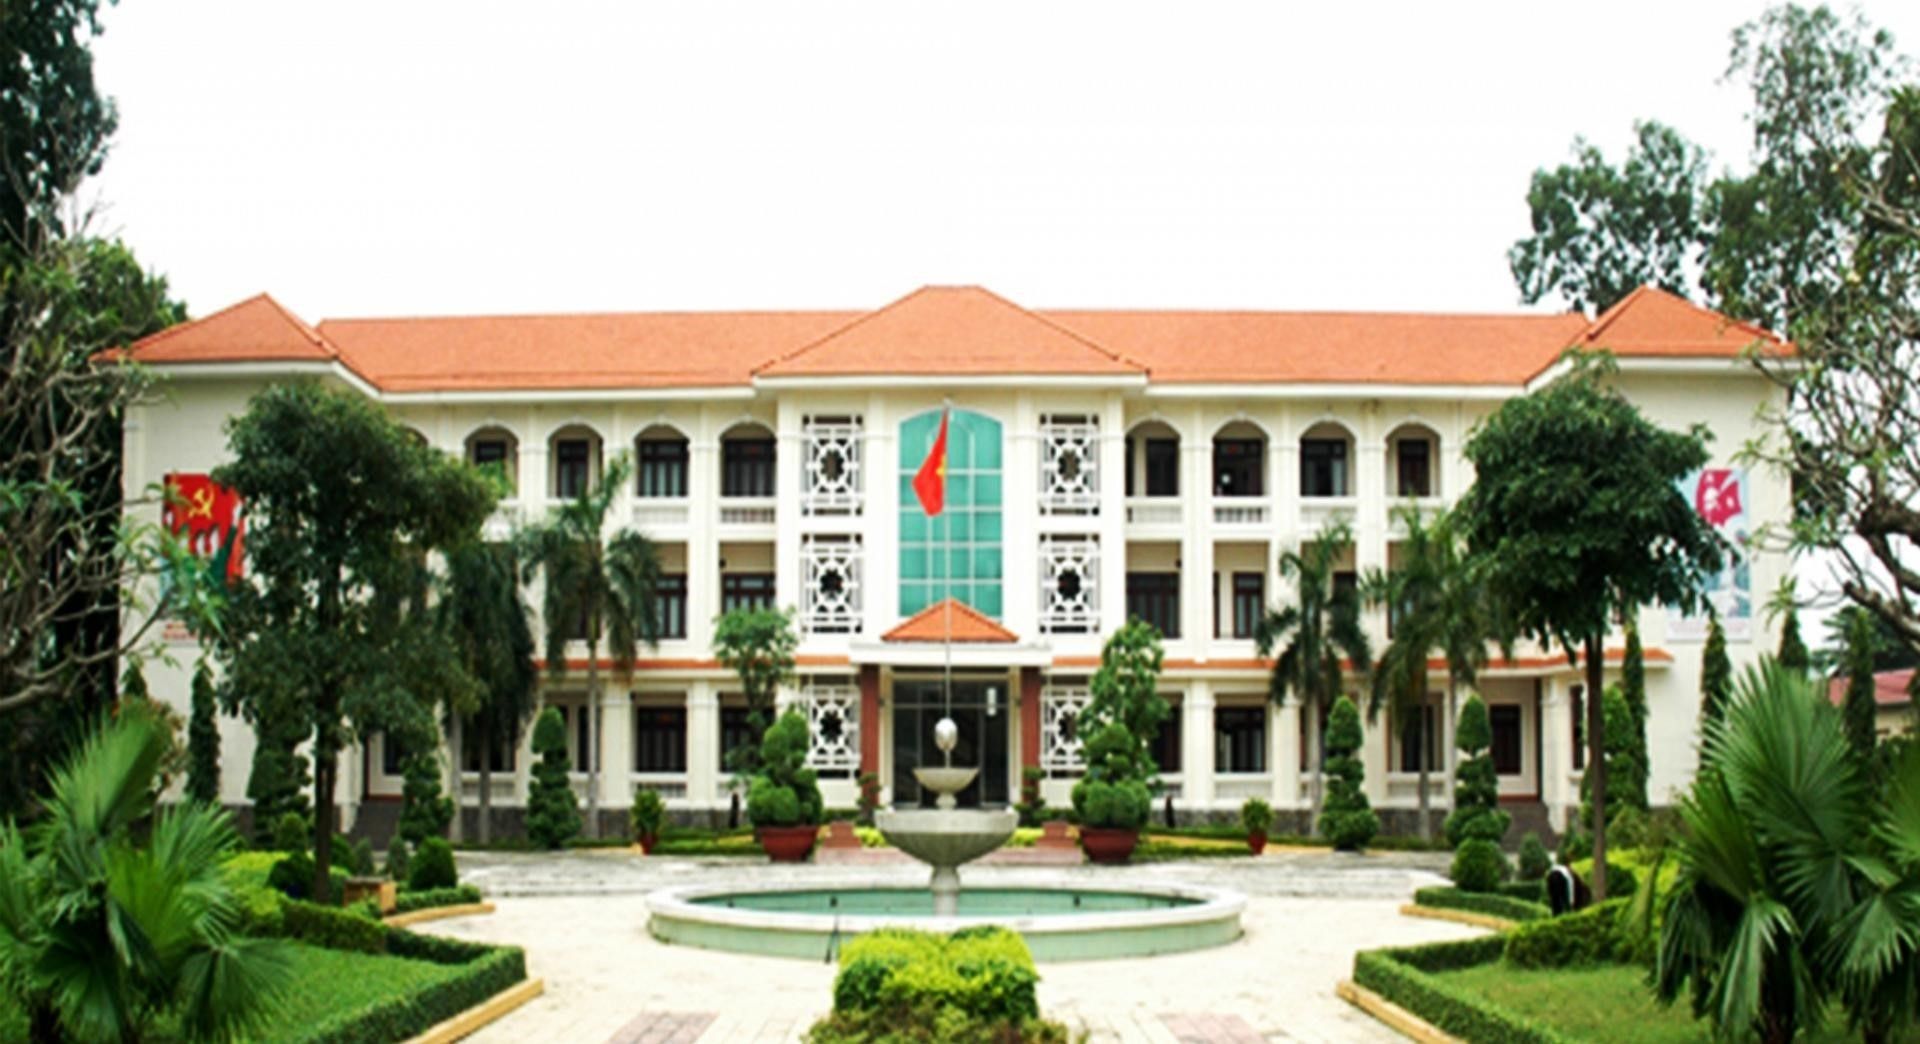 Chung cư cao cấp phù hợp cho sinh viên trường Đại học Trần Đại Nghĩa, quận Gò Vấp